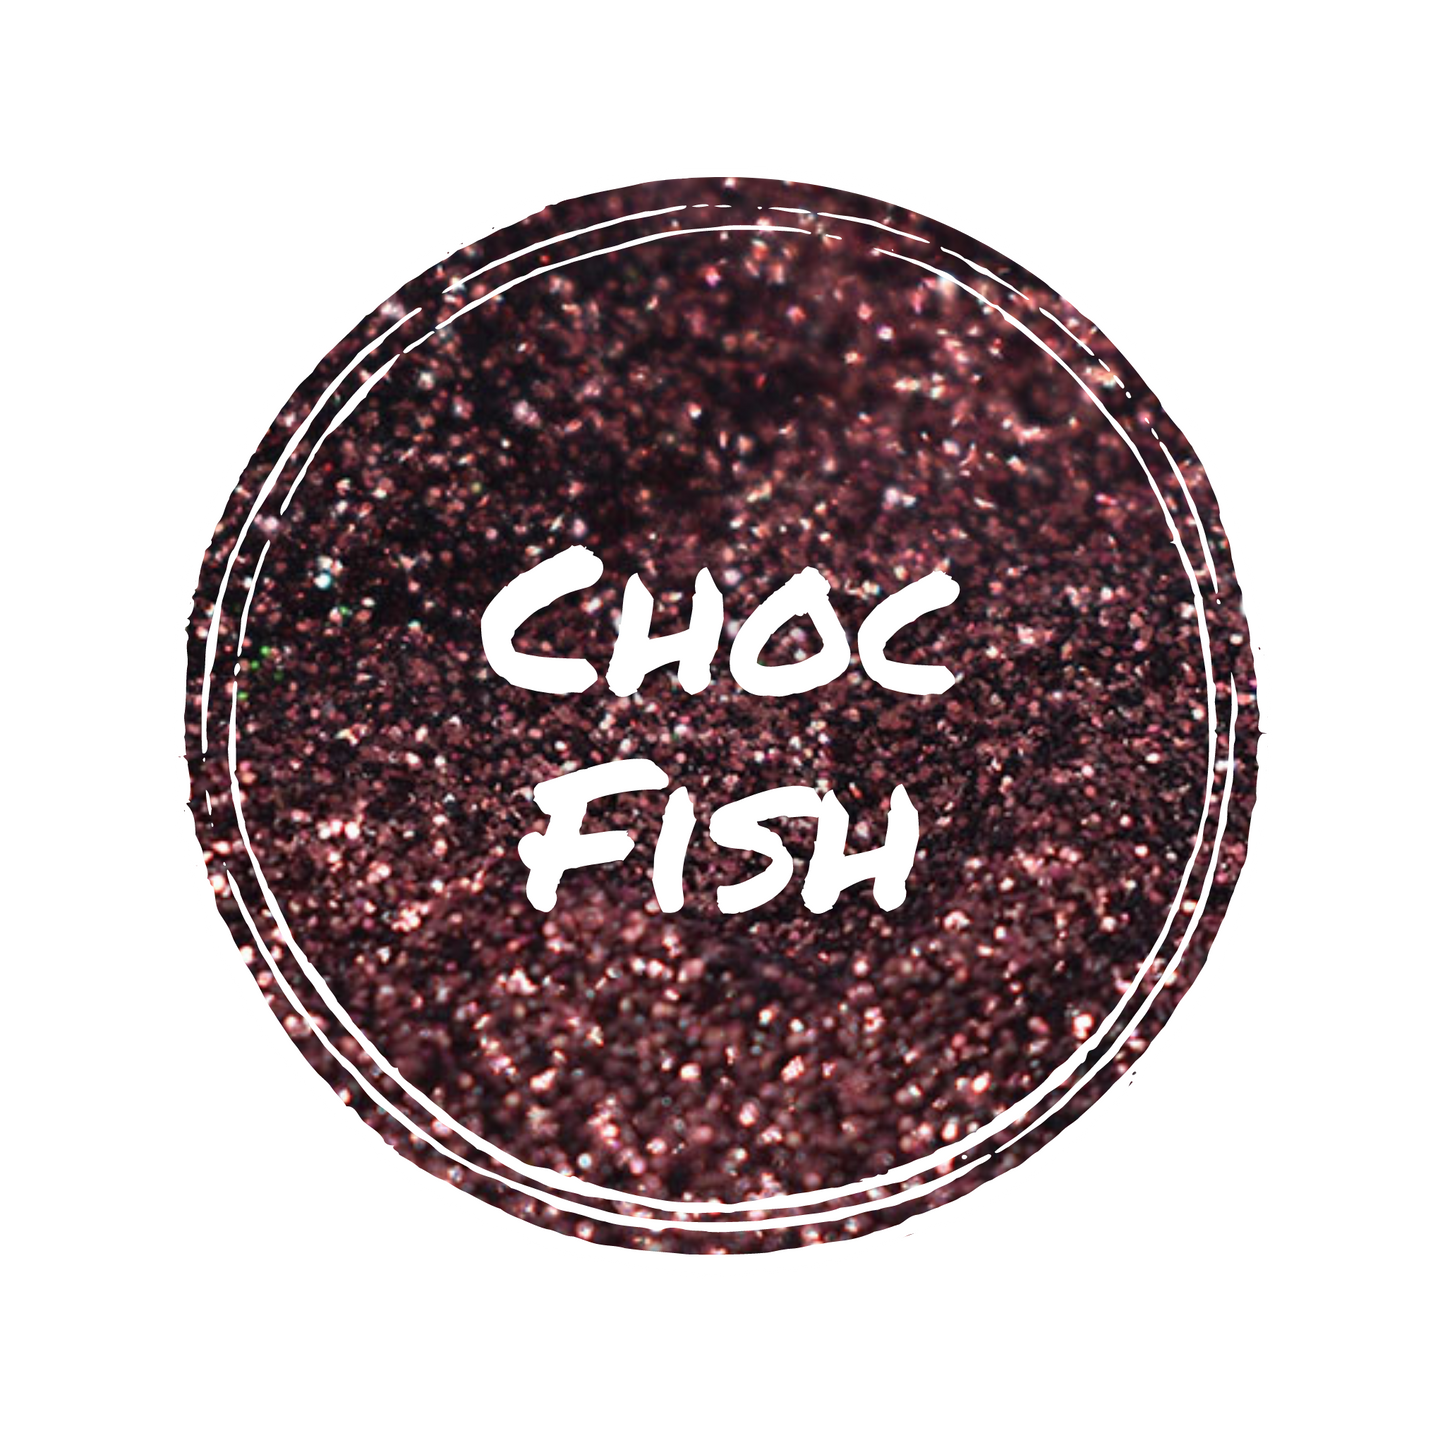 Choc Fish